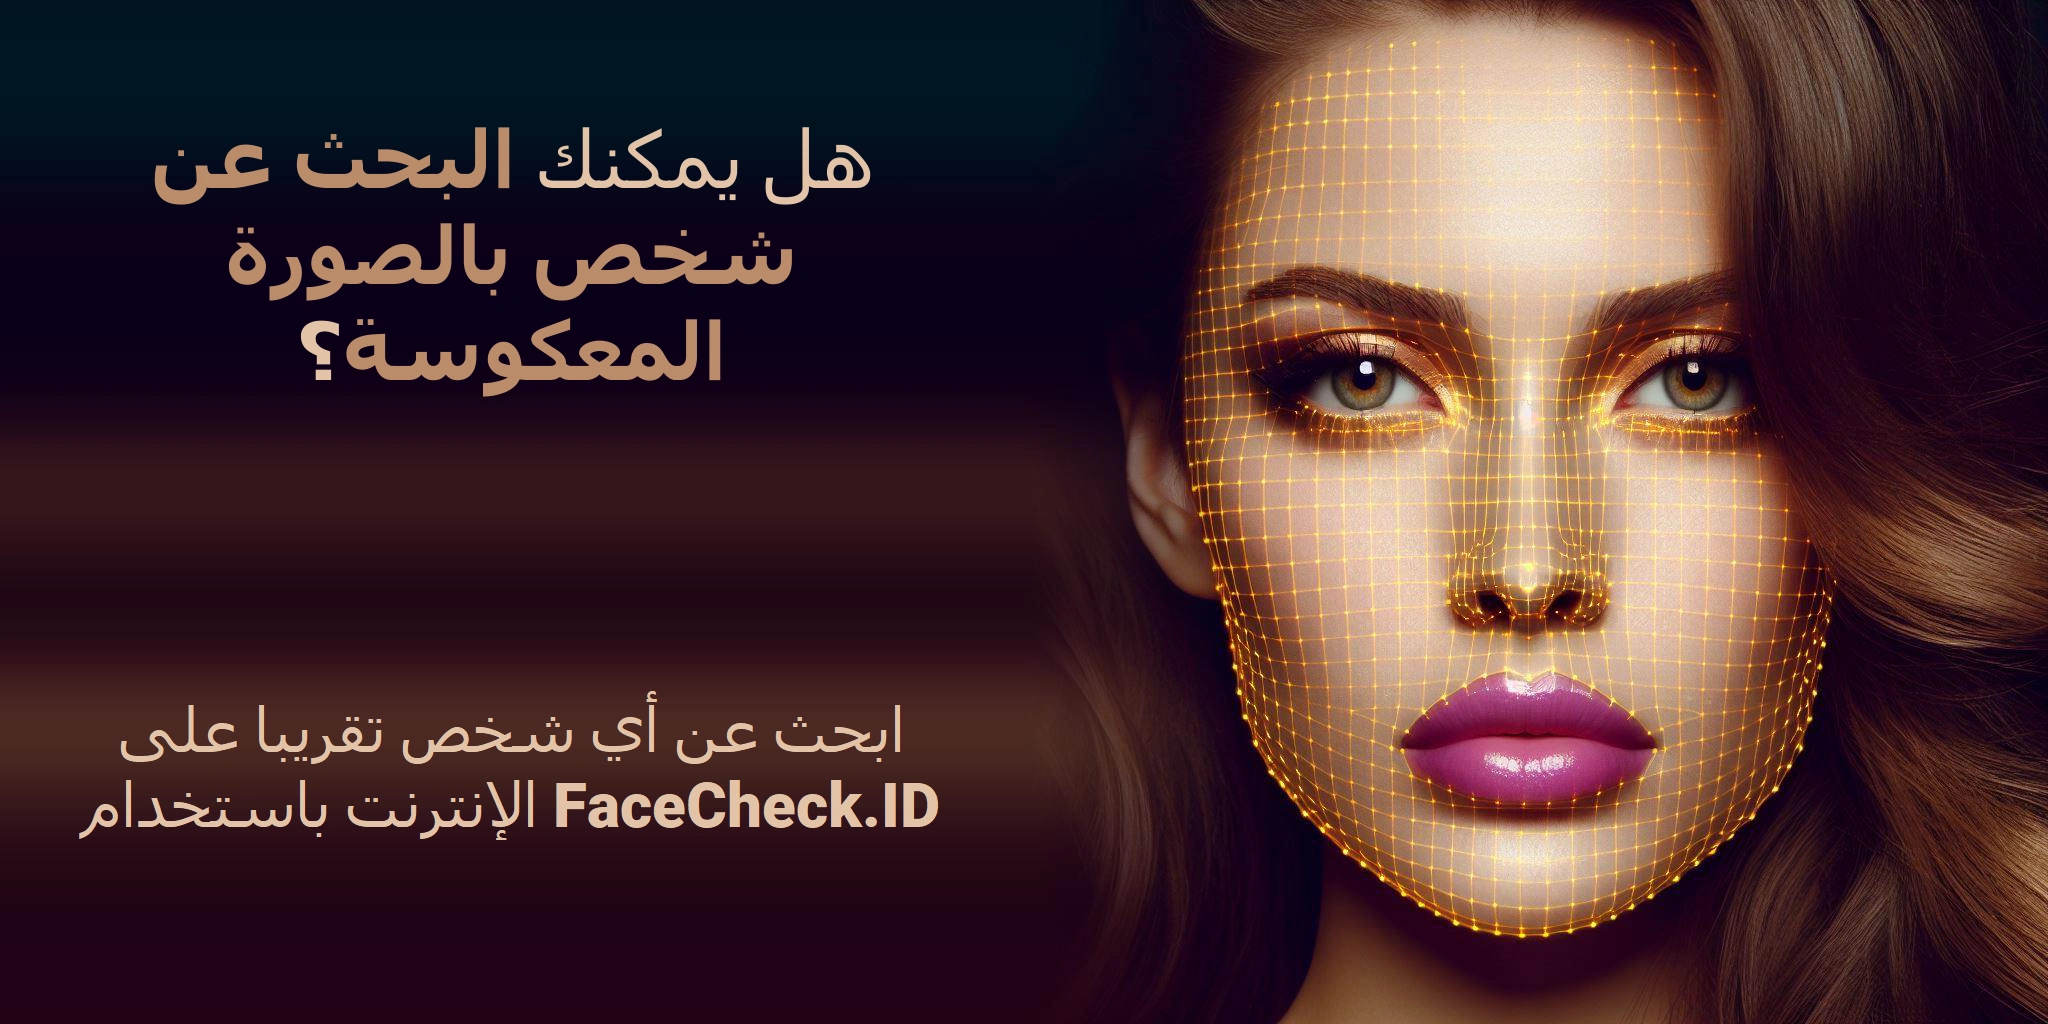 هل يمكنك البحث عن شخص بالصورة المعكوسة؟ ابحث عن أي شخص تقريبا على الإنترنت باستخدام FaceCheck.ID